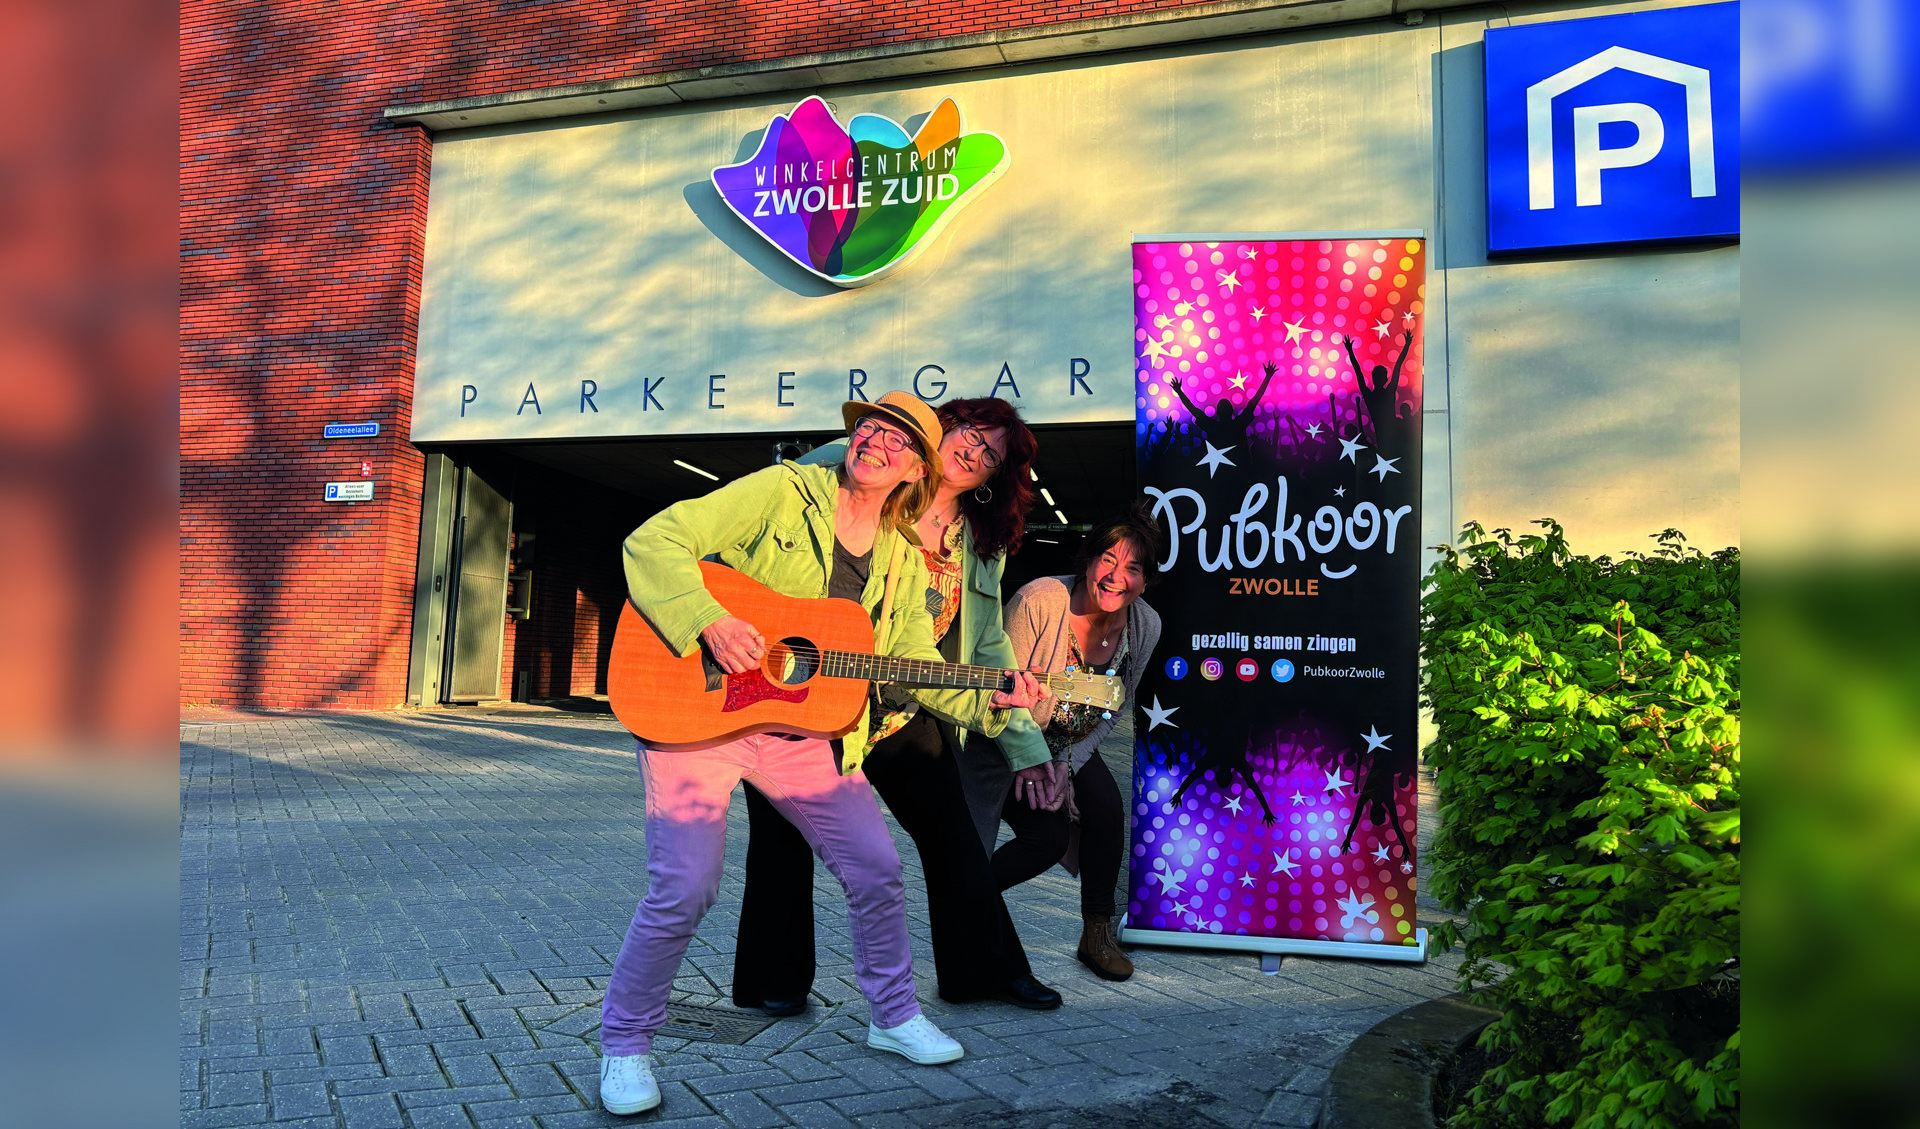 Op zondagmiddag 2 juni samen zingen met het PubKoor in de parkeergarage van winkelcentrum Zwolle Zuid